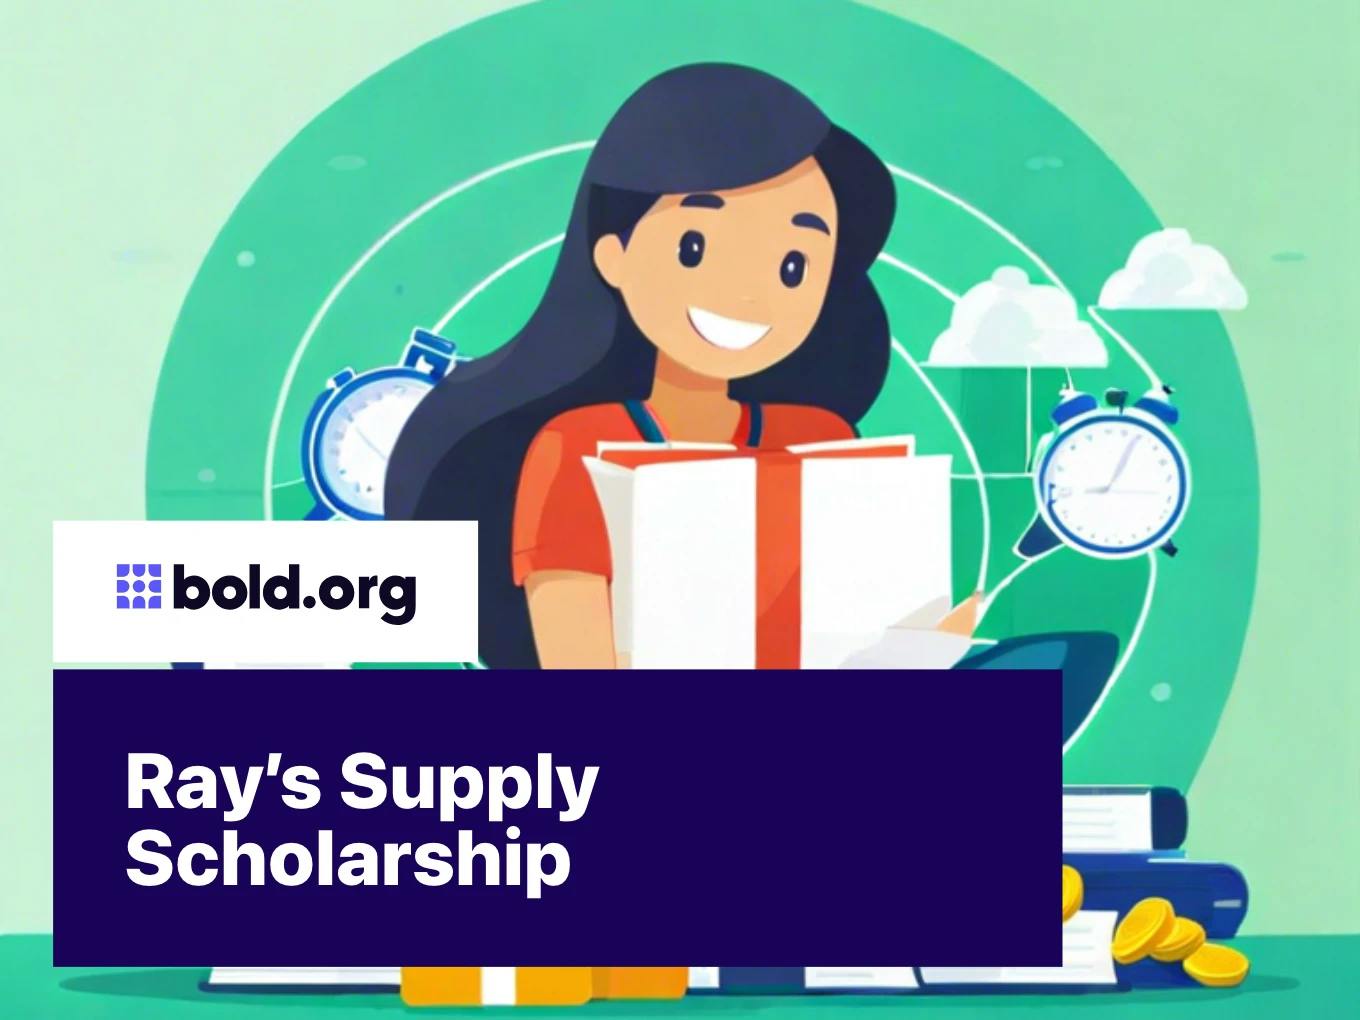 Ray’s Supply Scholarship